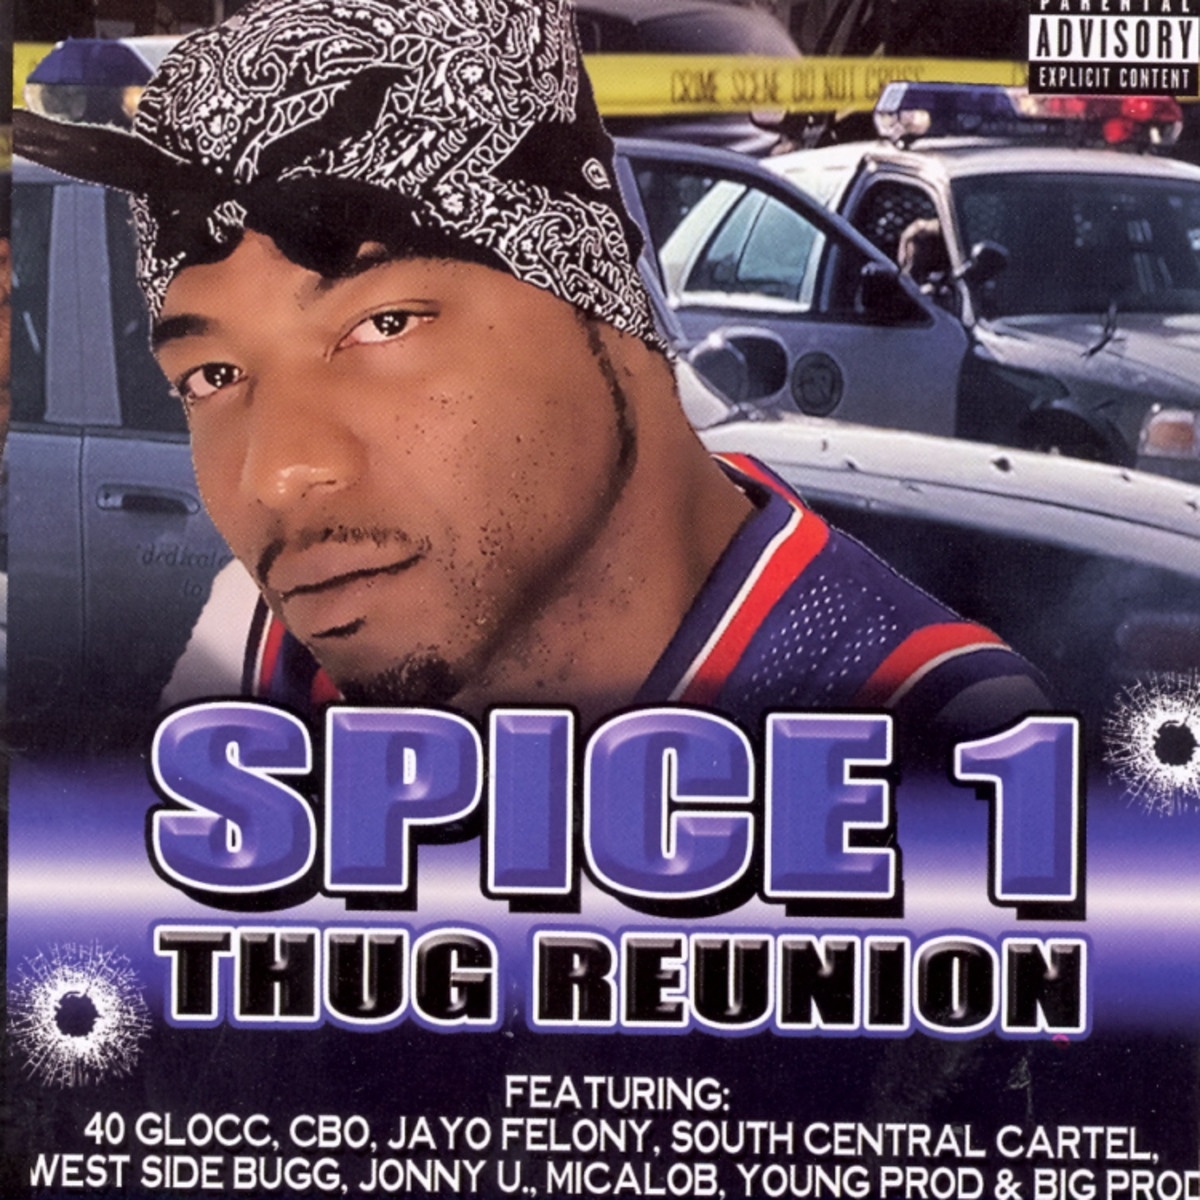 Thug Reunion